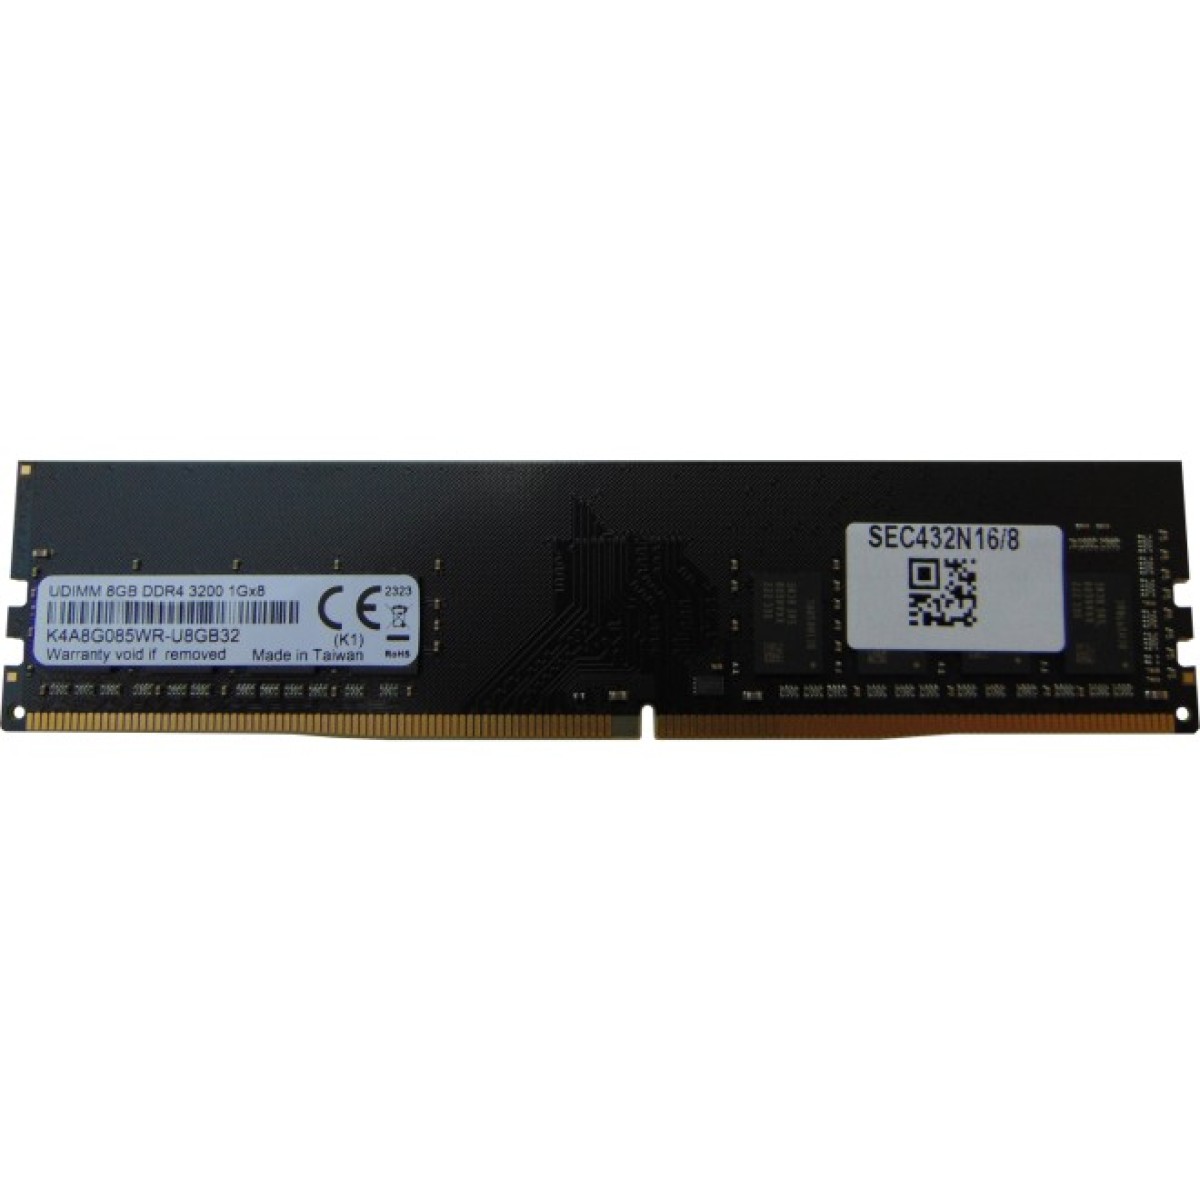 Модуль памяти для компьютера DDR4 8GB 3200 MHz Samsung (SEC432N16/8) 98_98.jpg - фото 1